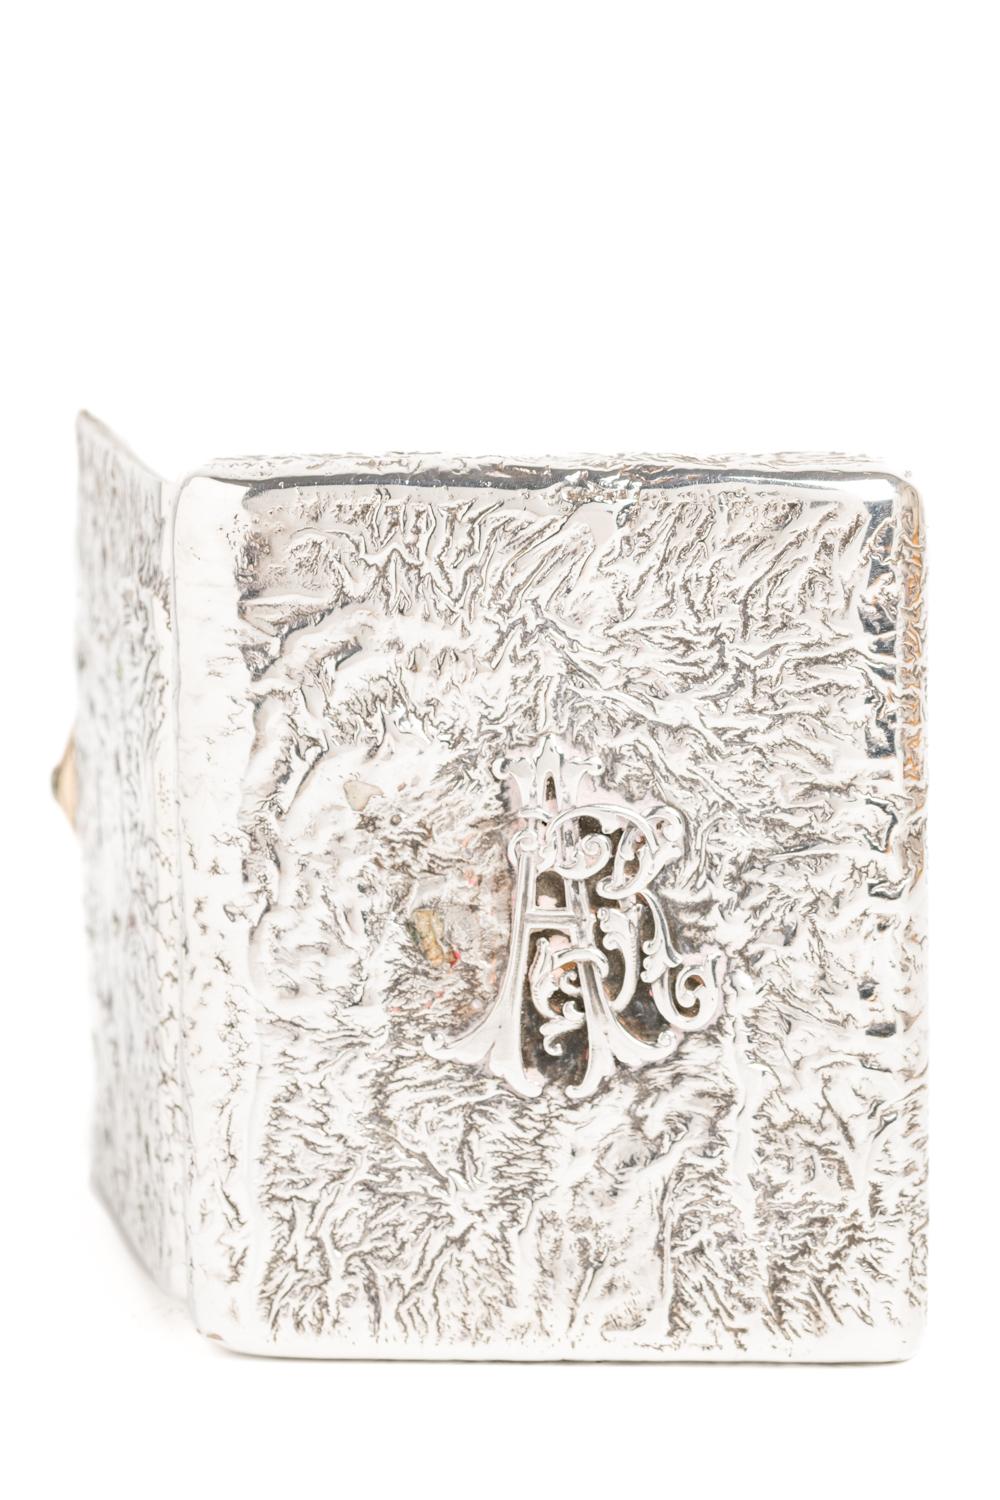 Antique Russian Samorodok Silver Gold and Diamond Cigarette Case For Sale 3